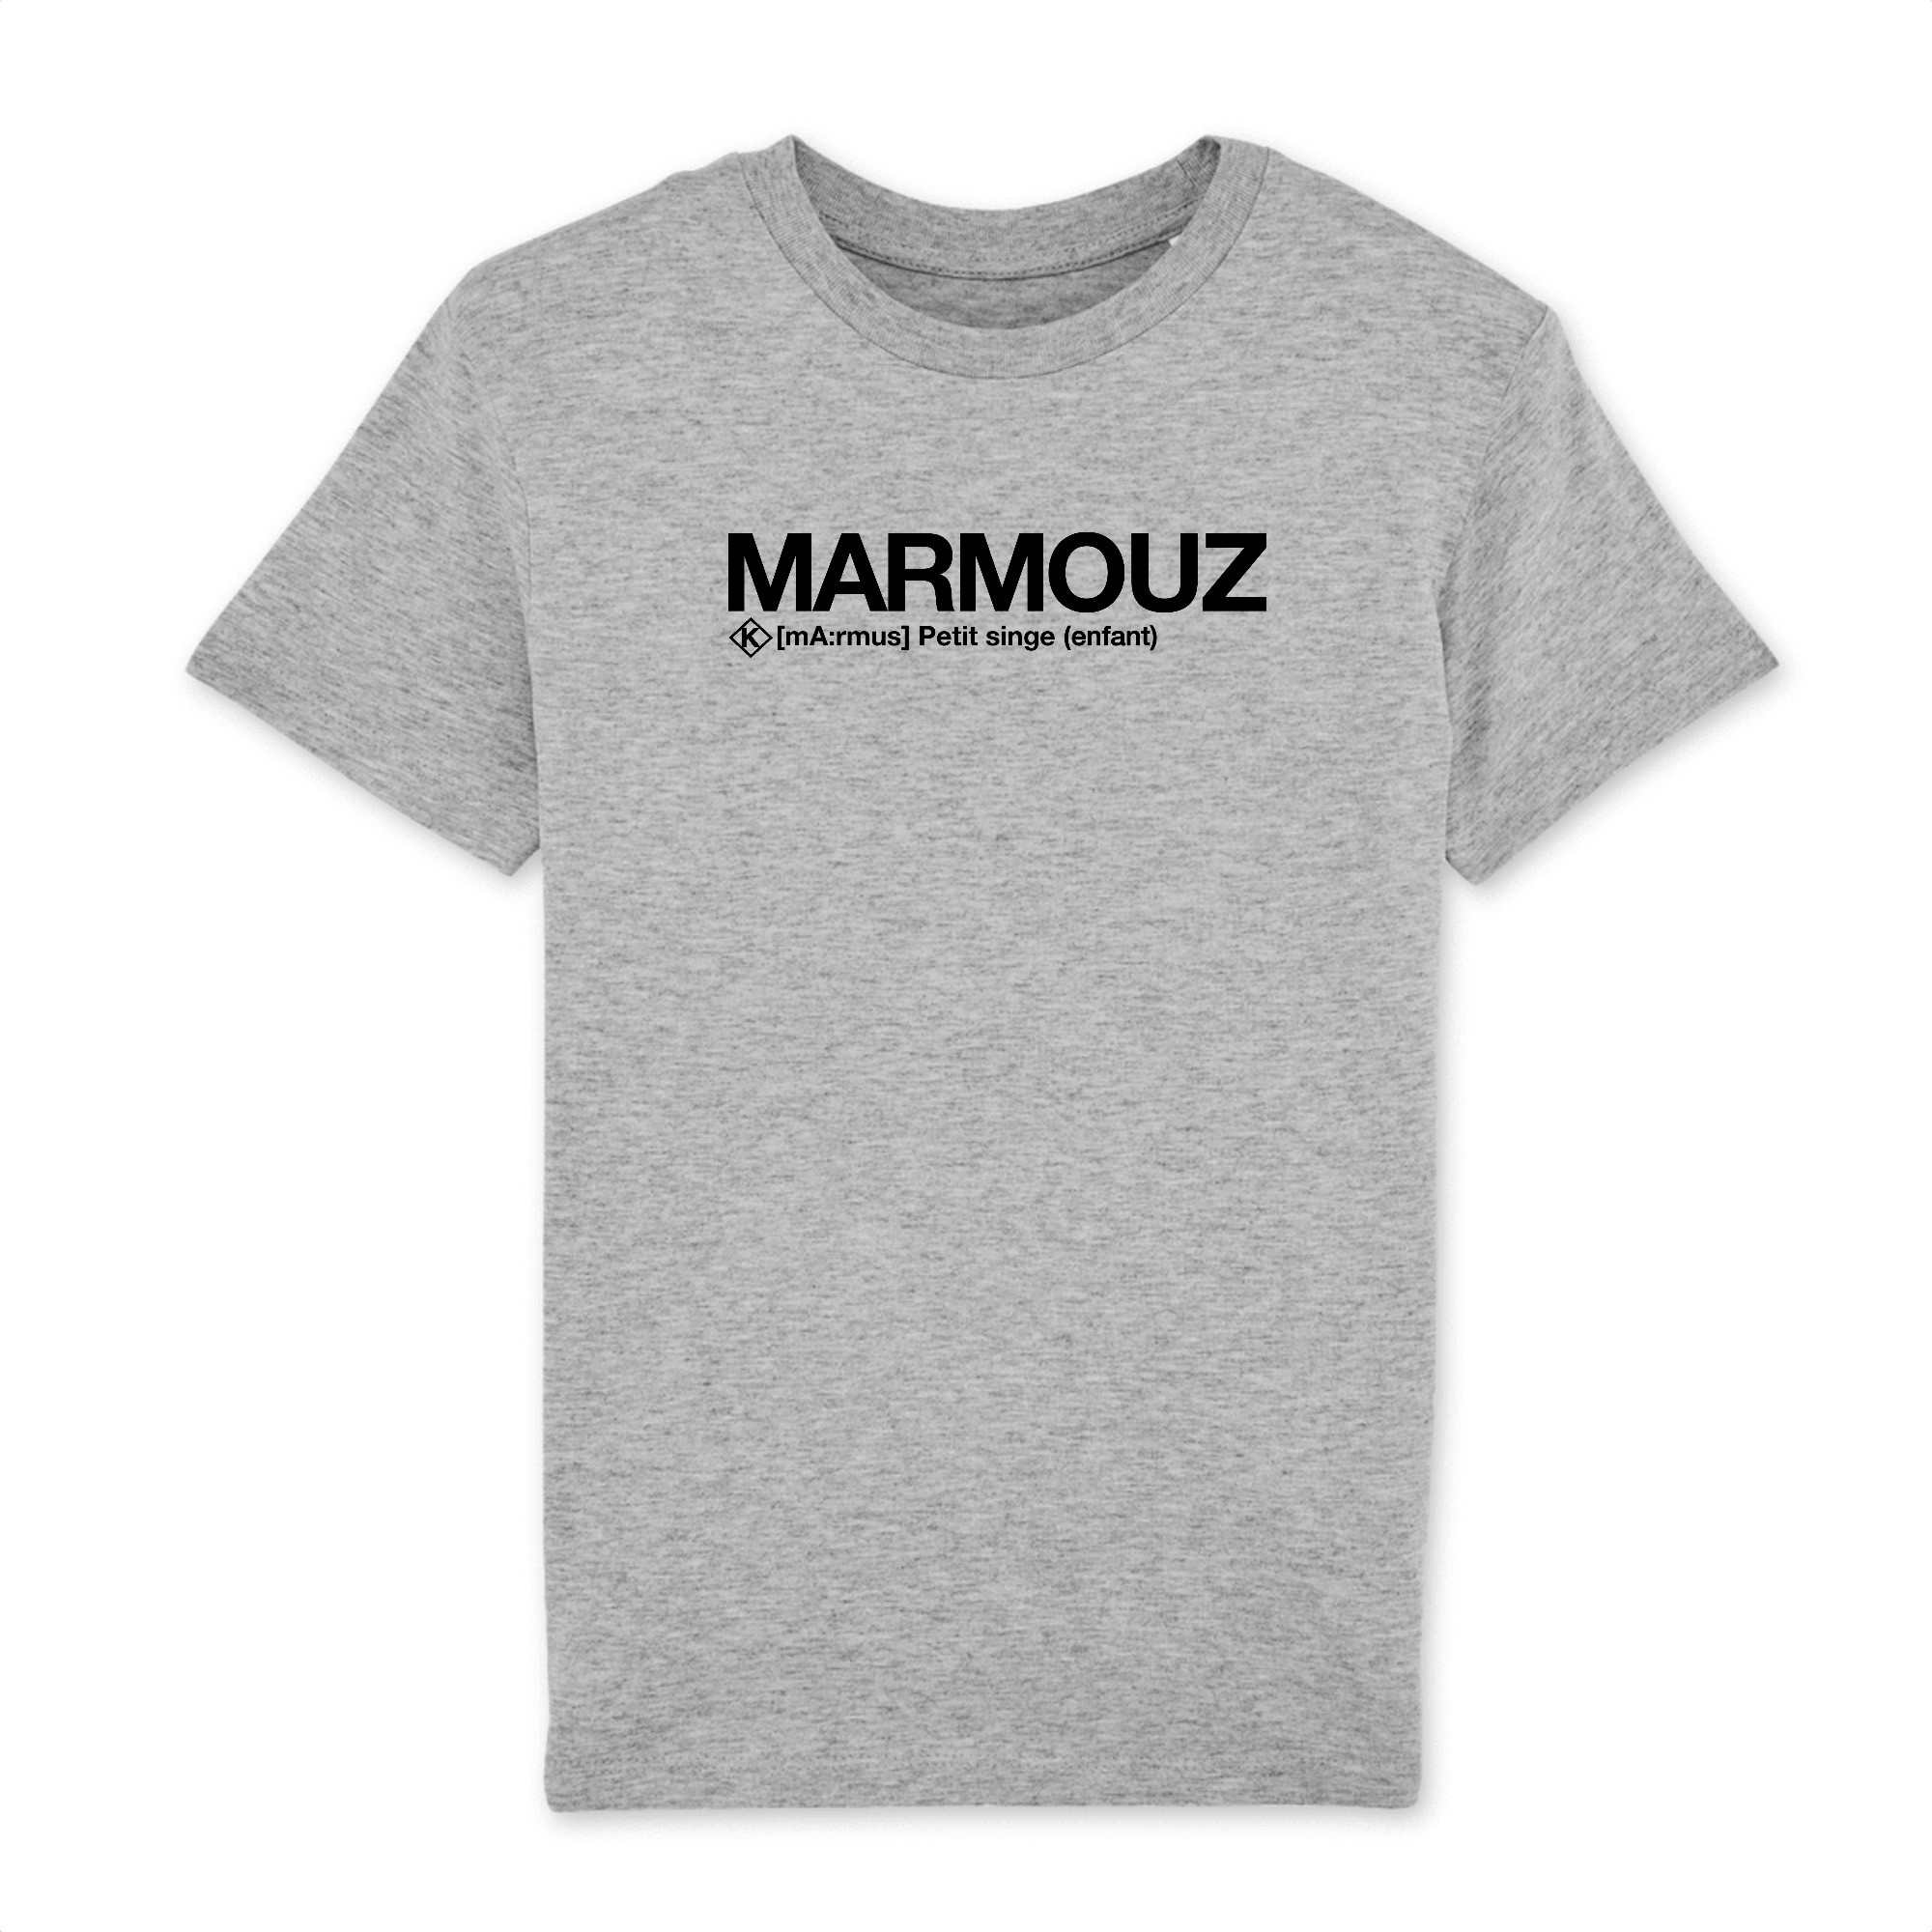 Marmouz T-shirt (Enfant)